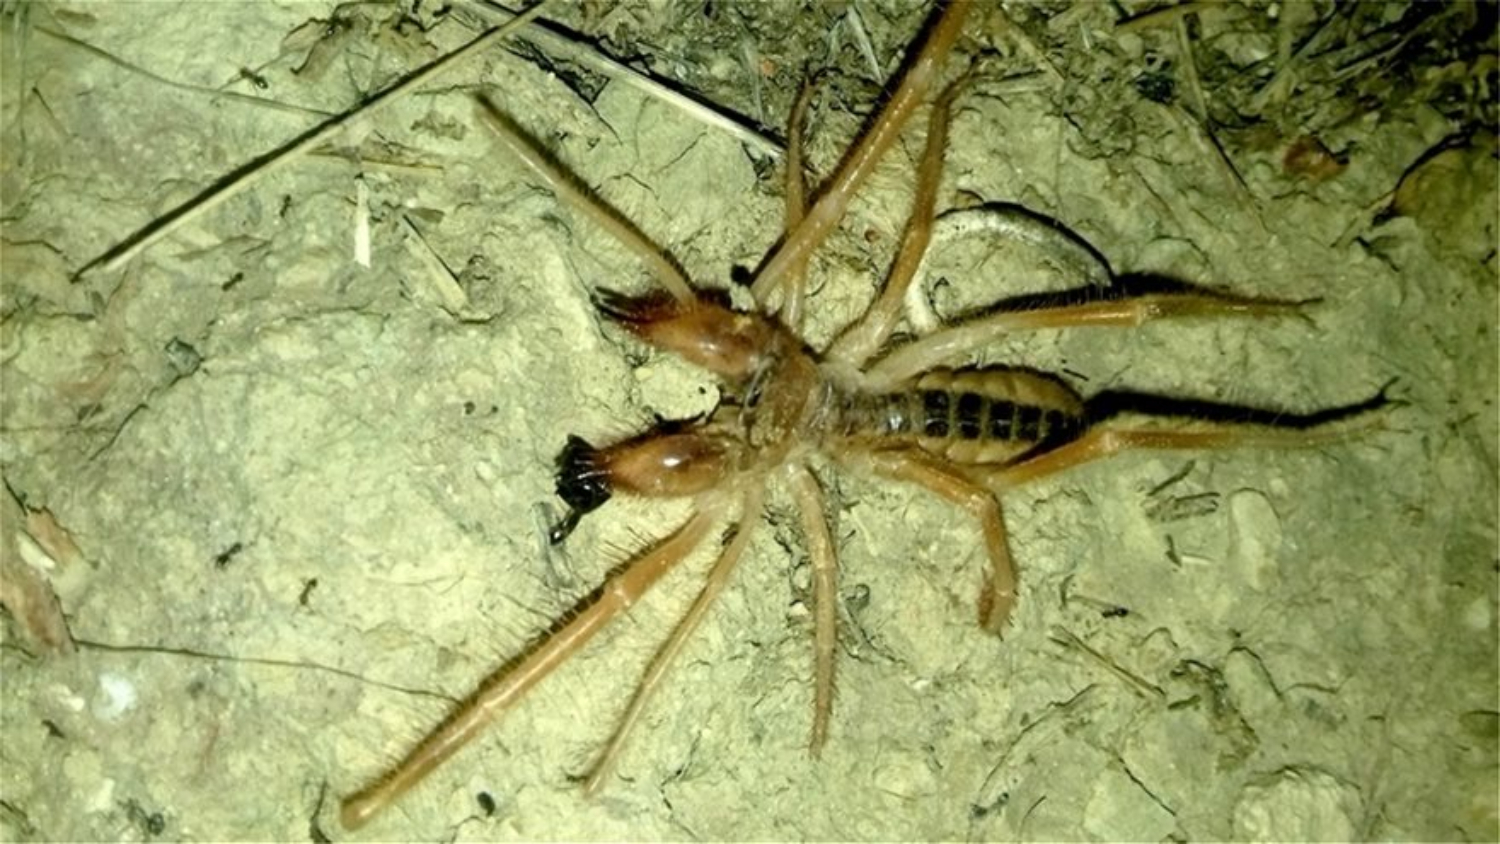 Φρίκη: Εντοπίστηκε νέο είδος αράχνης – Κρύβεται σε ρούχα και σε έπιπλα (φωτο)